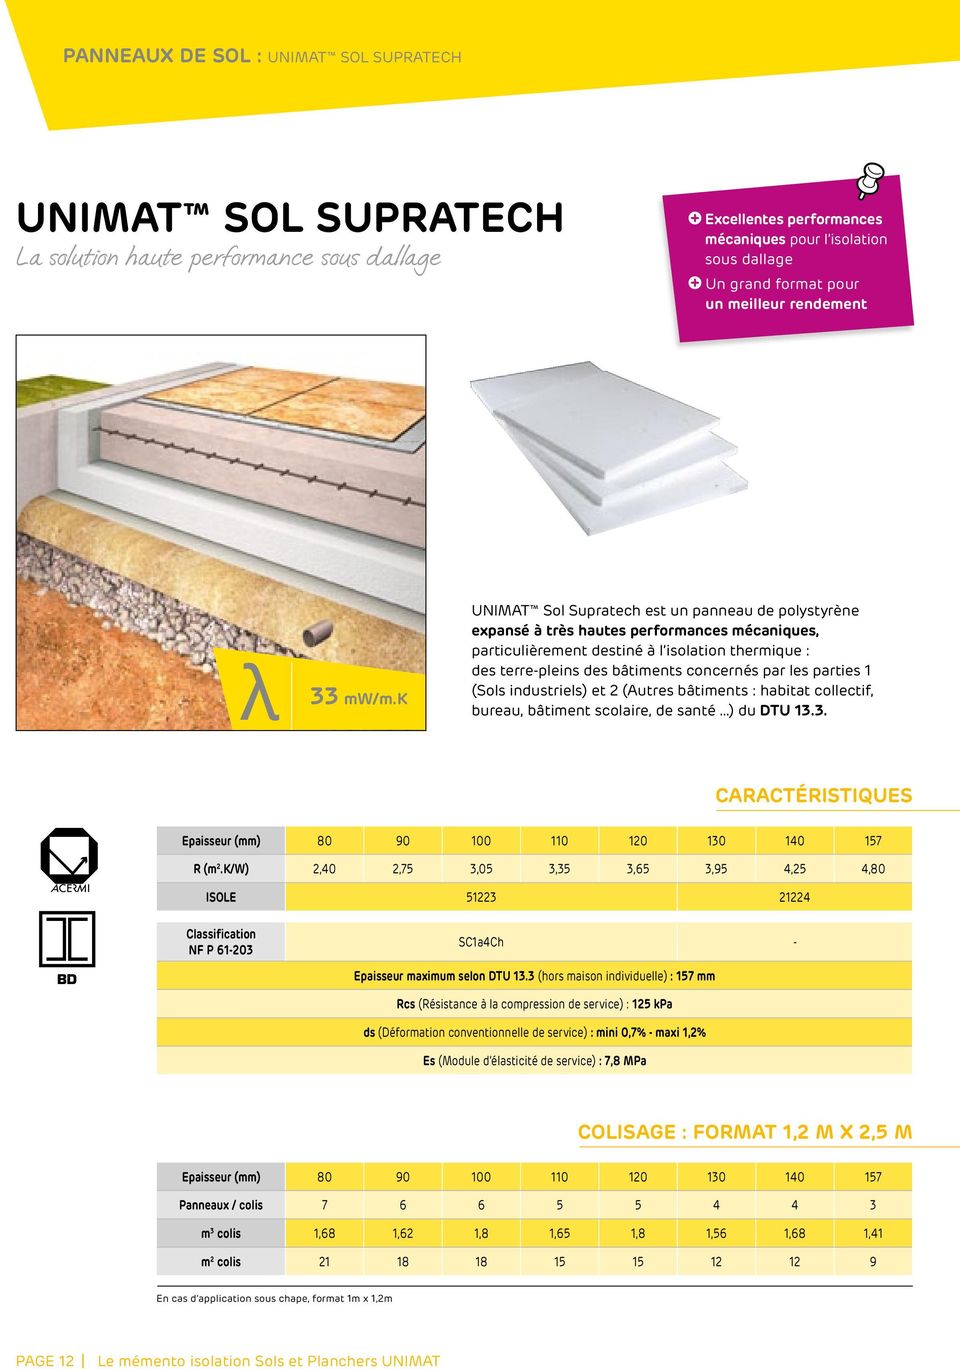 k UNIMAT Sol Supratech est un panneau de polystyrène expansé à très hautes performances mécaniques, particulièrement destiné à l isolation thermique : des terre-pleins des bâtiments concernés par les